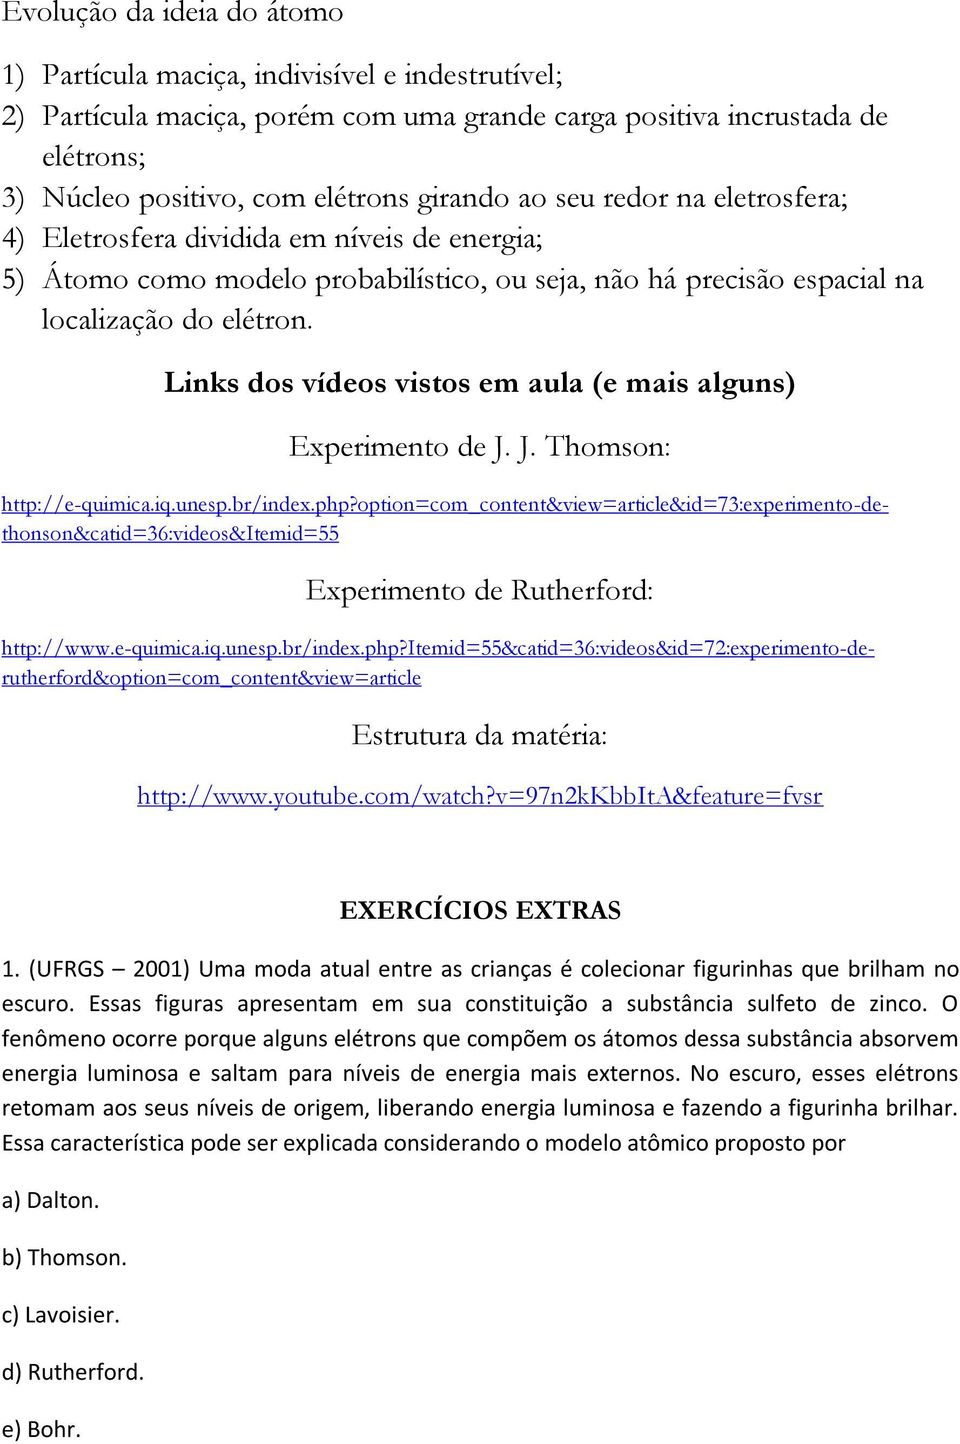 Links dos vídeos vistos em aula (e mais alguns) Experimento de J. J. Thomson: Experimento de Rutherford: http://e-quimica.iq.unesp.br/index.php?